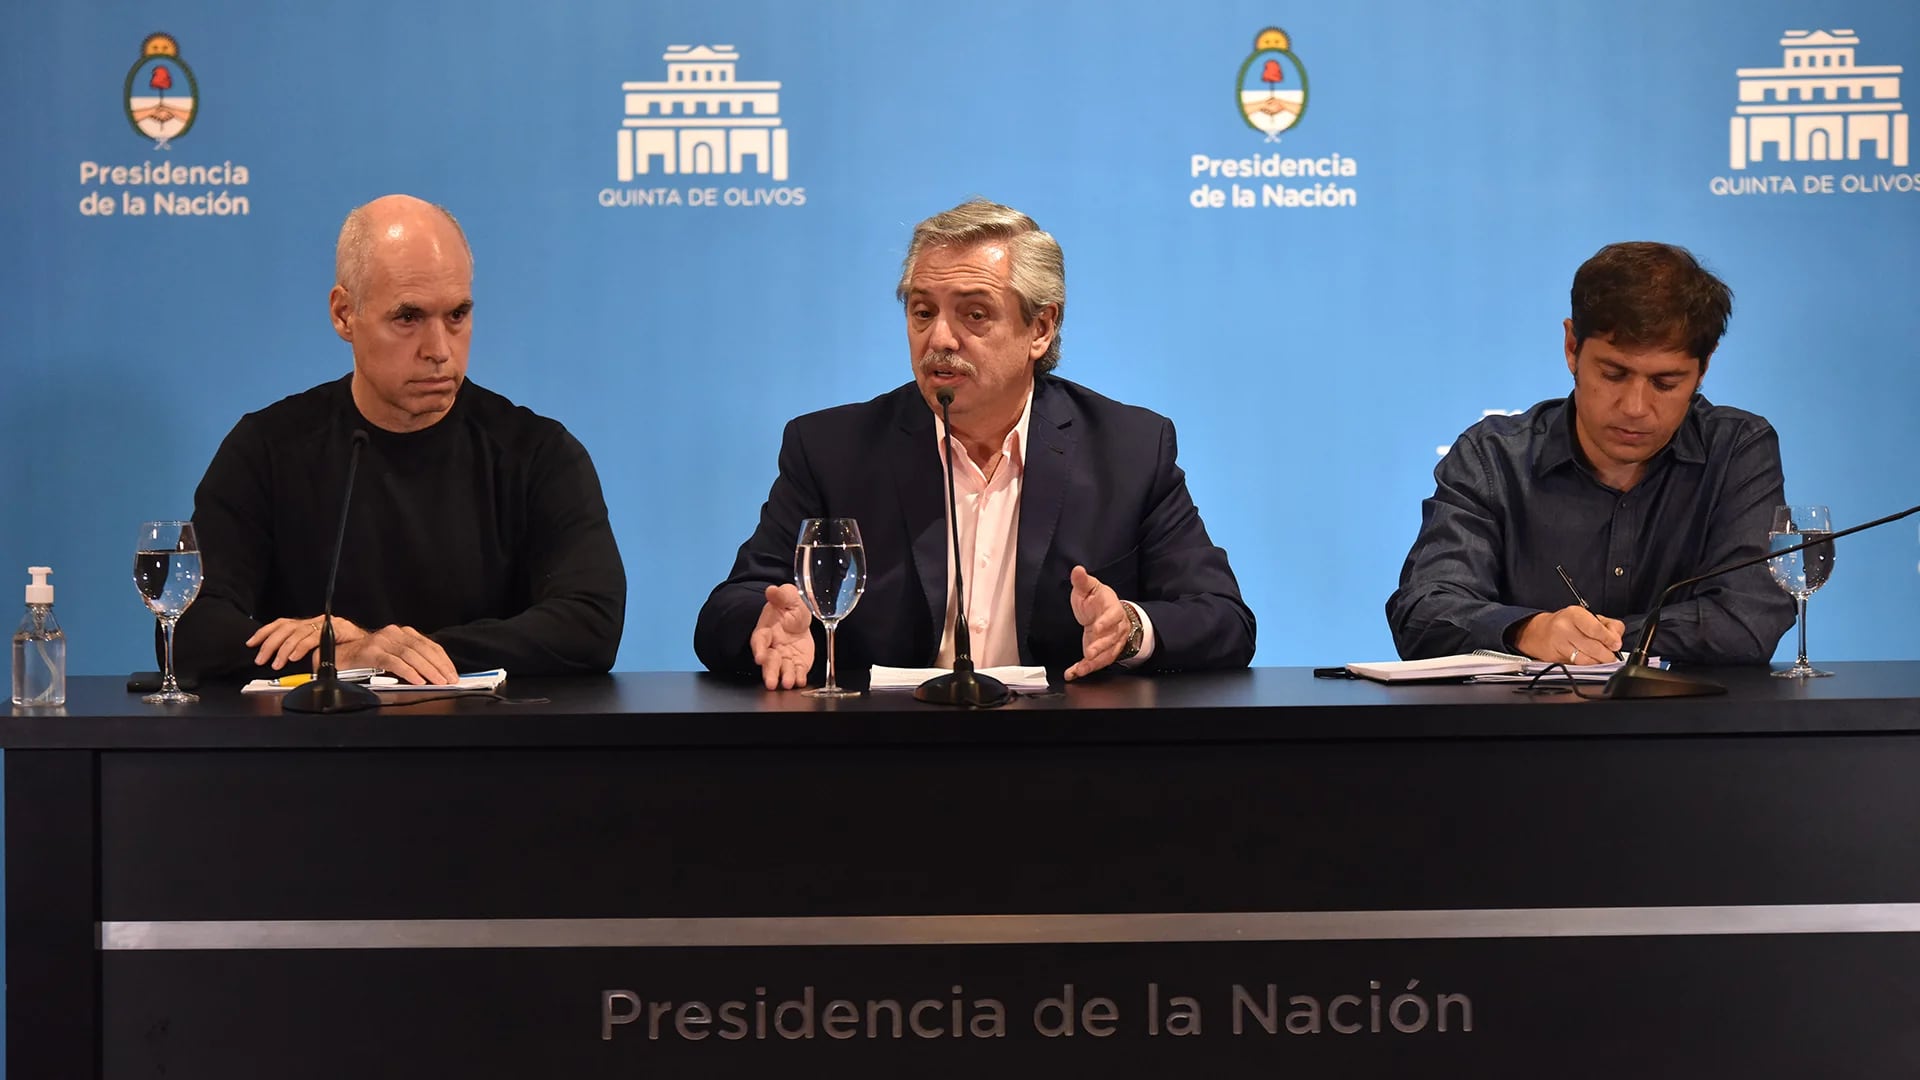 El Presidente estuvo acompañado por el gobernador de Buenos Aires, Axel Kicillof, y el jefe de Gobierno porteño, Horacio Rodríguez Larreta (Franco Fafasuli)